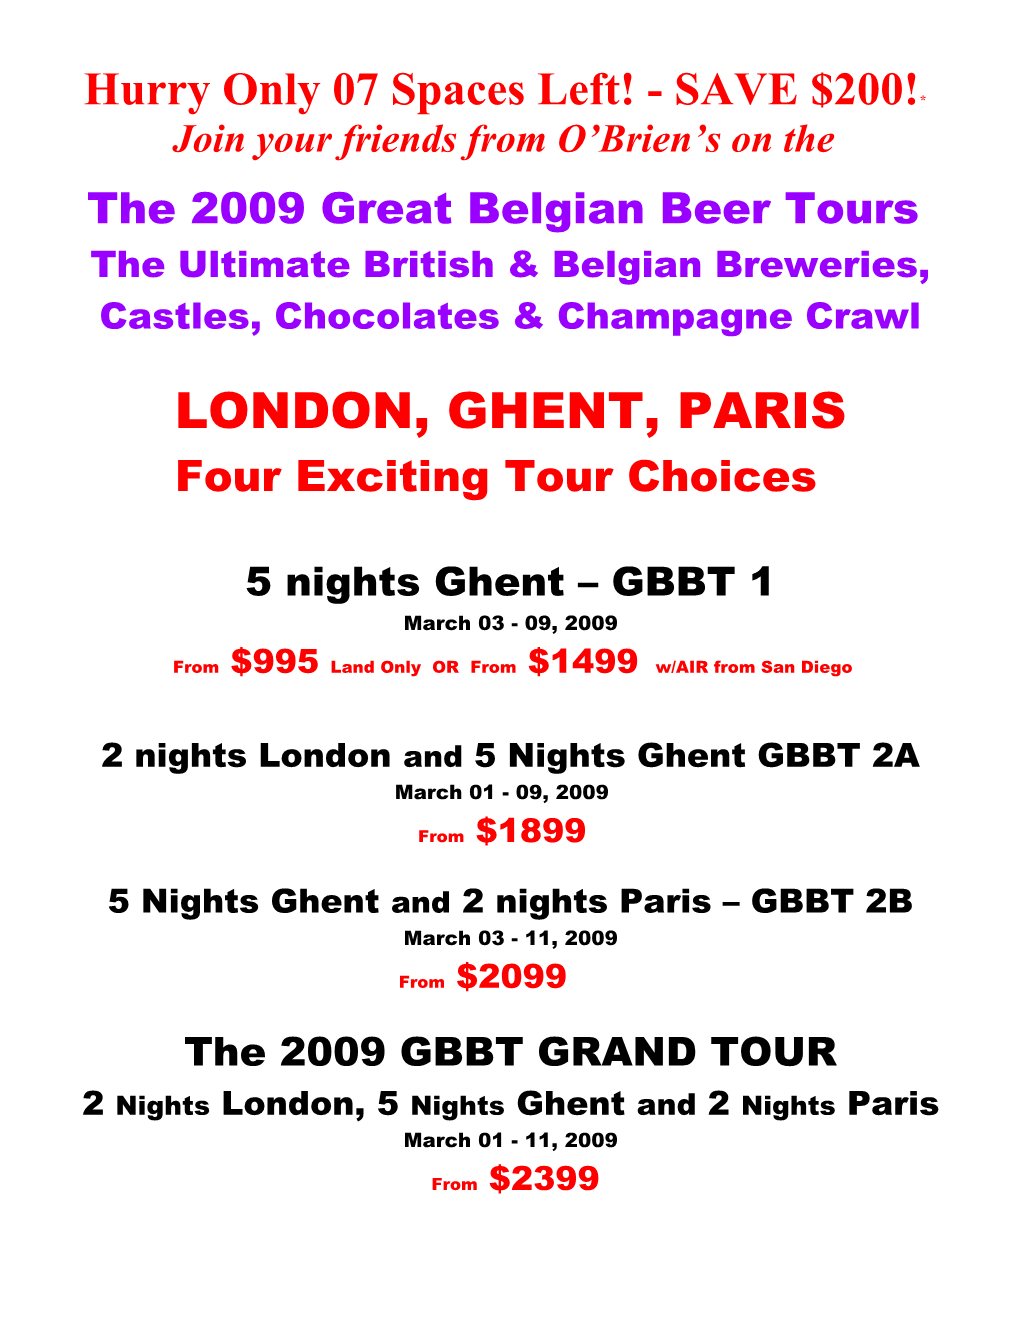 The 2009 Great Belgian Beer Tour